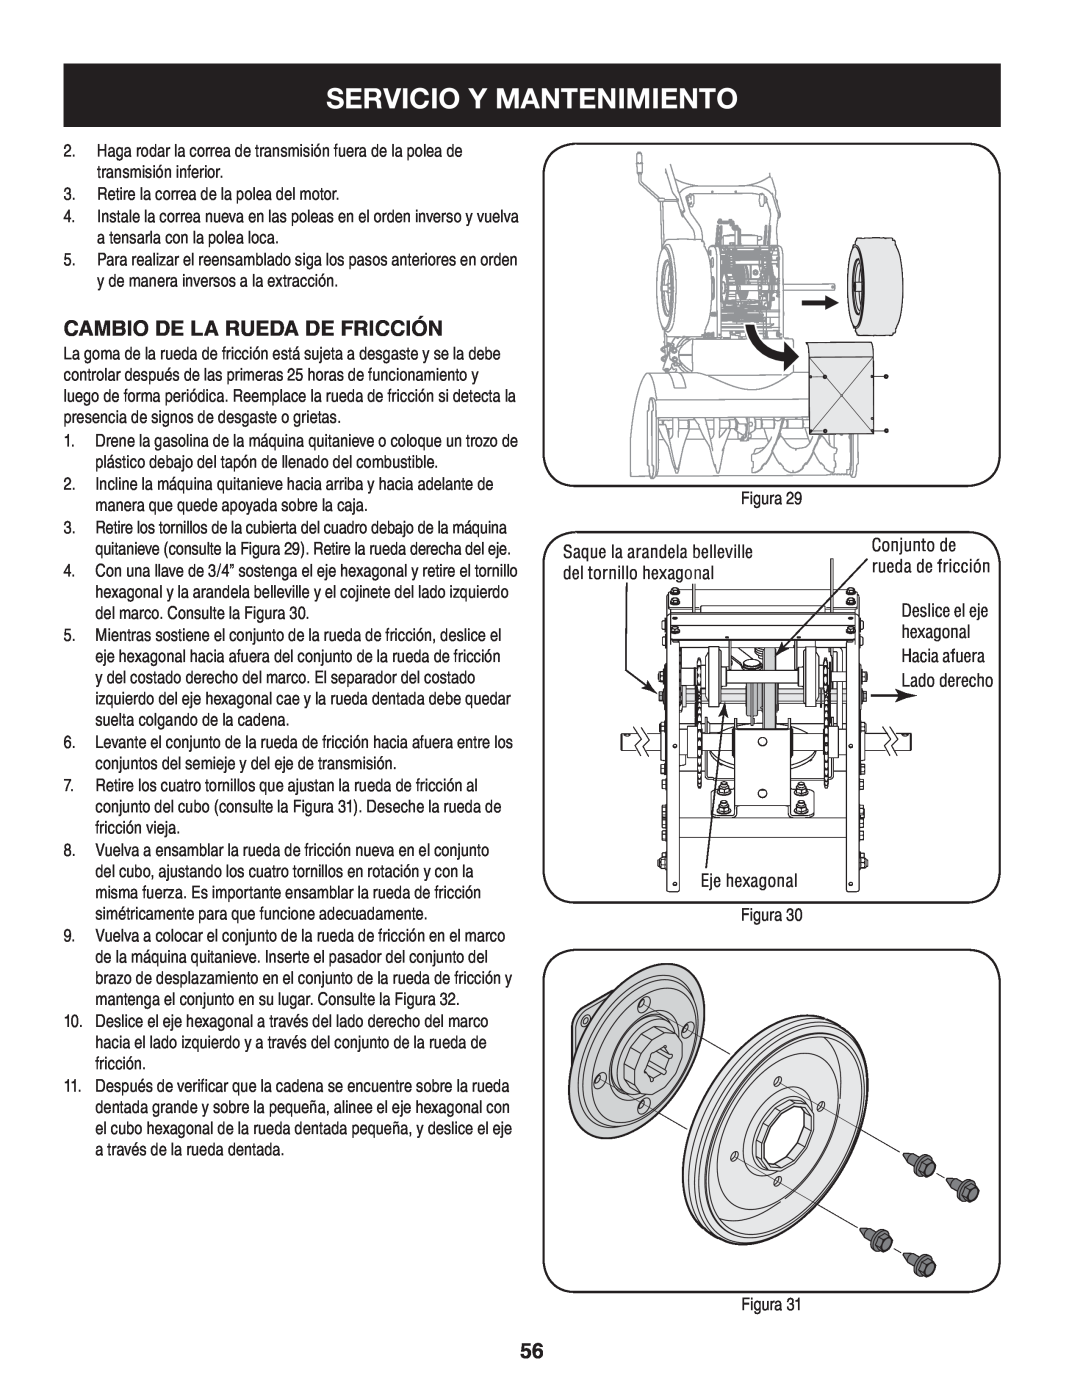 Craftsman 247.88845 manual Servicio Y Mantenimiento, Cambio de la rueda de fricción 